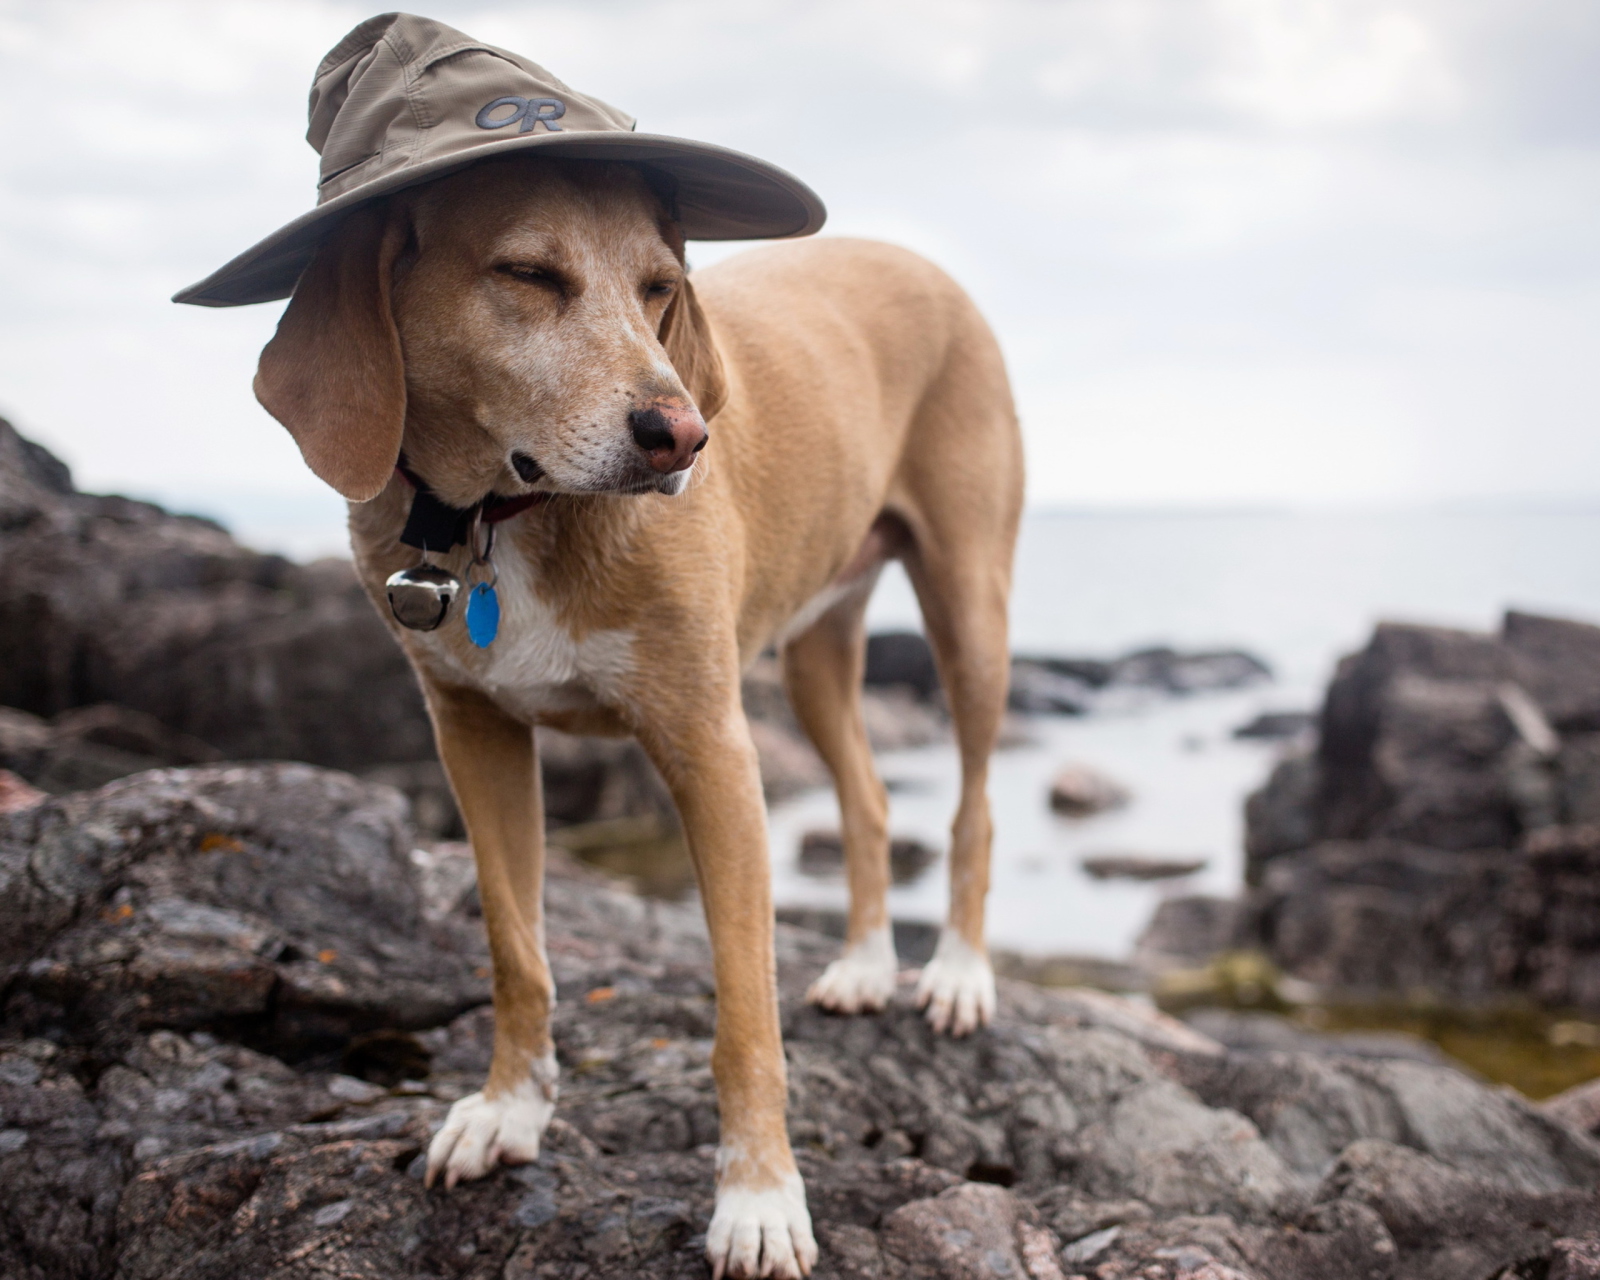 Sfondi Dog In Funny Wizard Style Hat 1600x1280